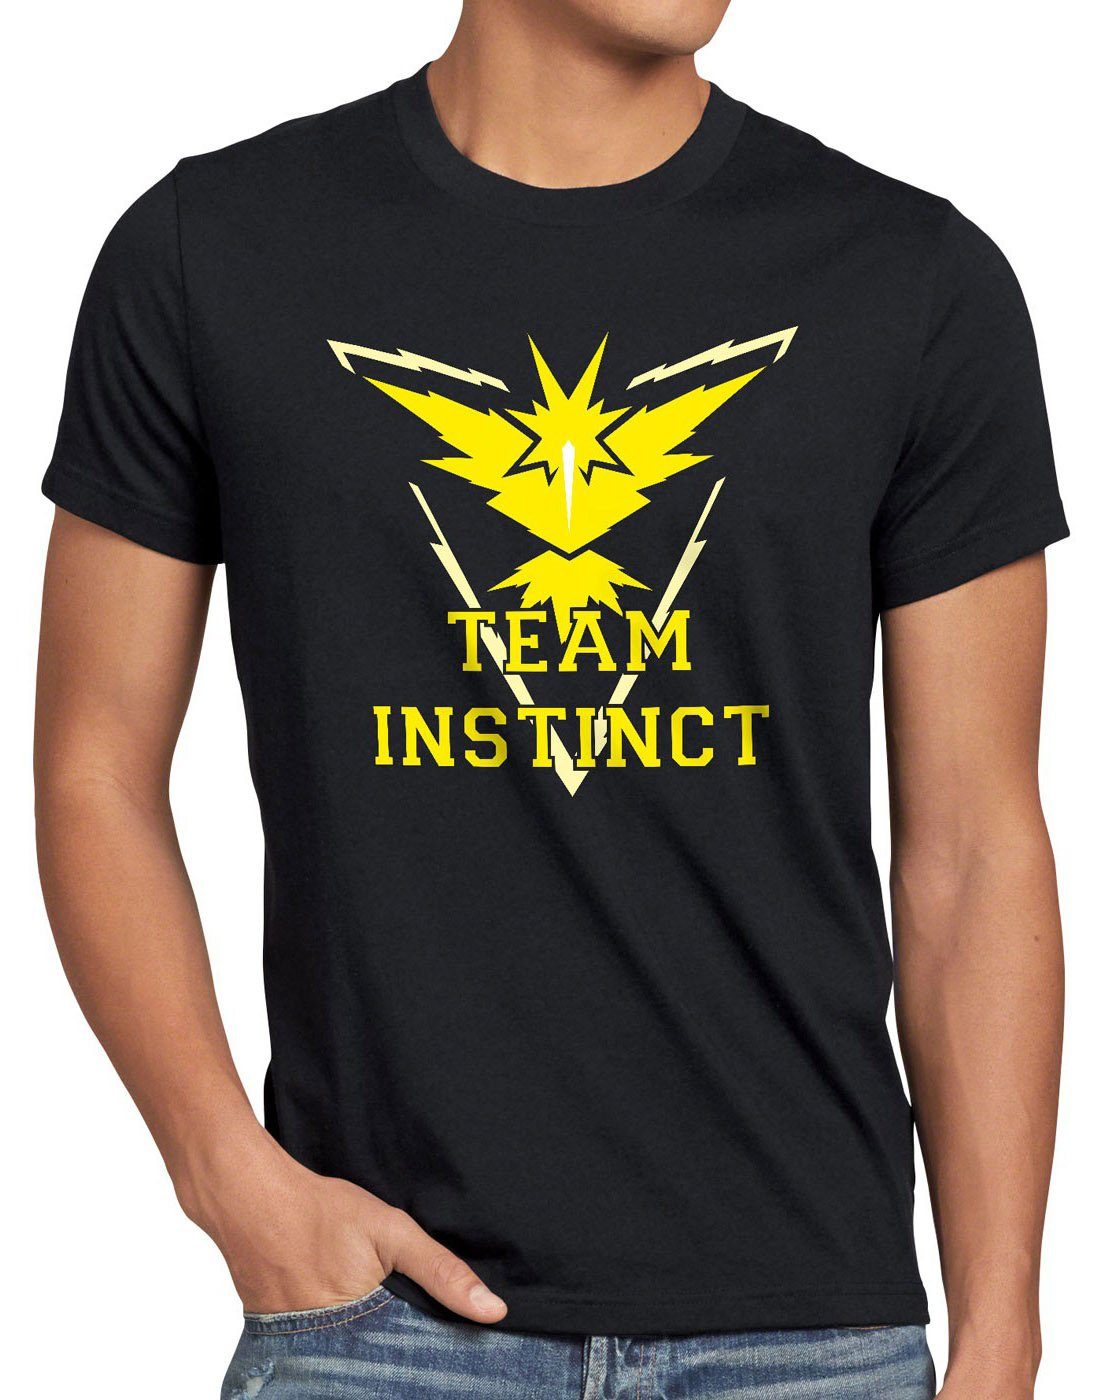 style3 Print-Shirt Herren T-Shirt Team Instinct gelb instinkt intuition boy poeball poke arena game schwarz